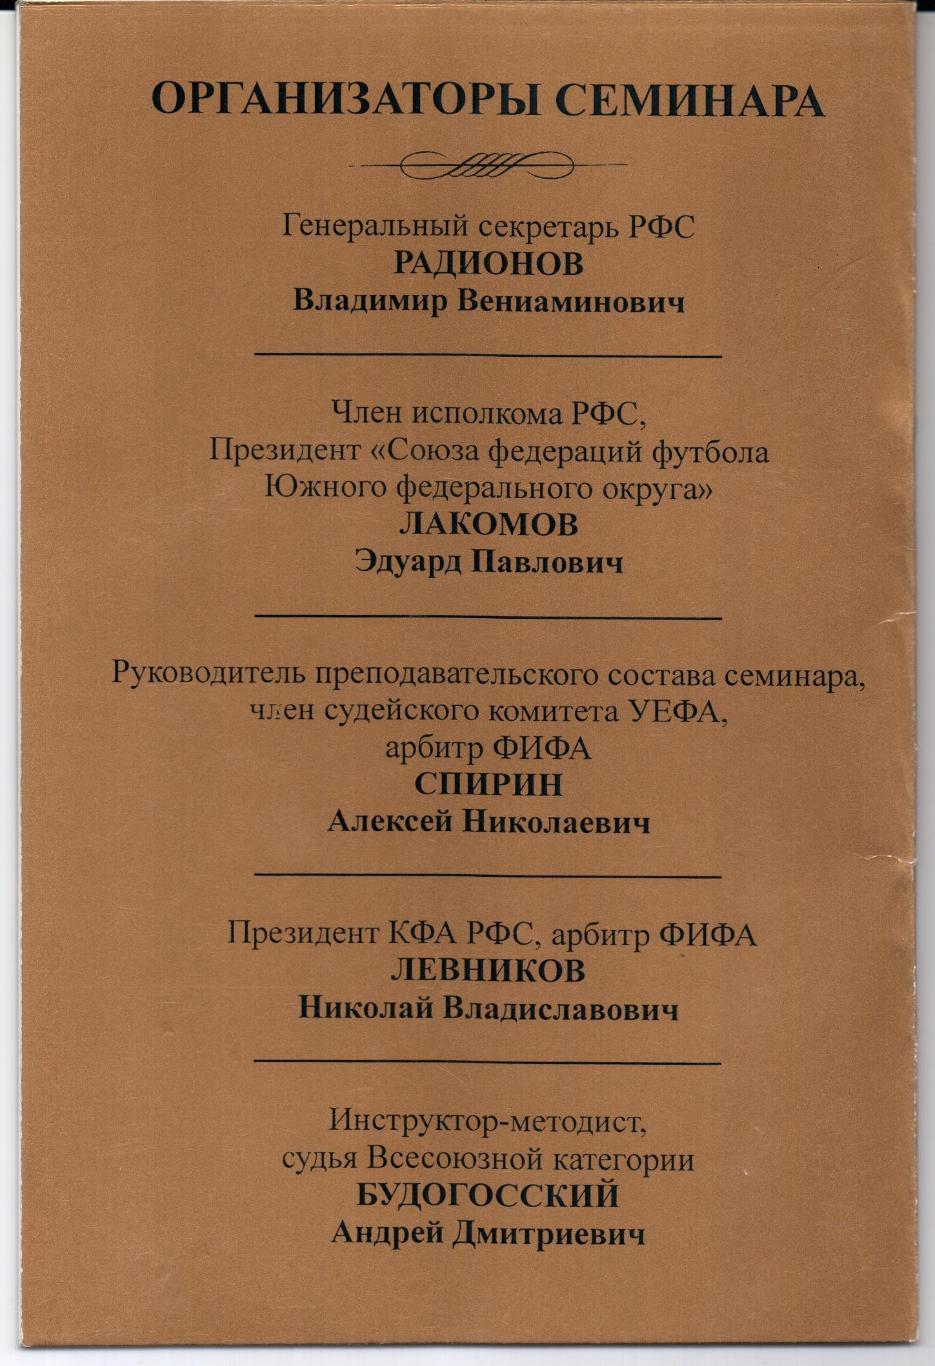 Программа семинара судей России по курсу УЕФА Прогресс-IV Азов 29-31.03.2002 1